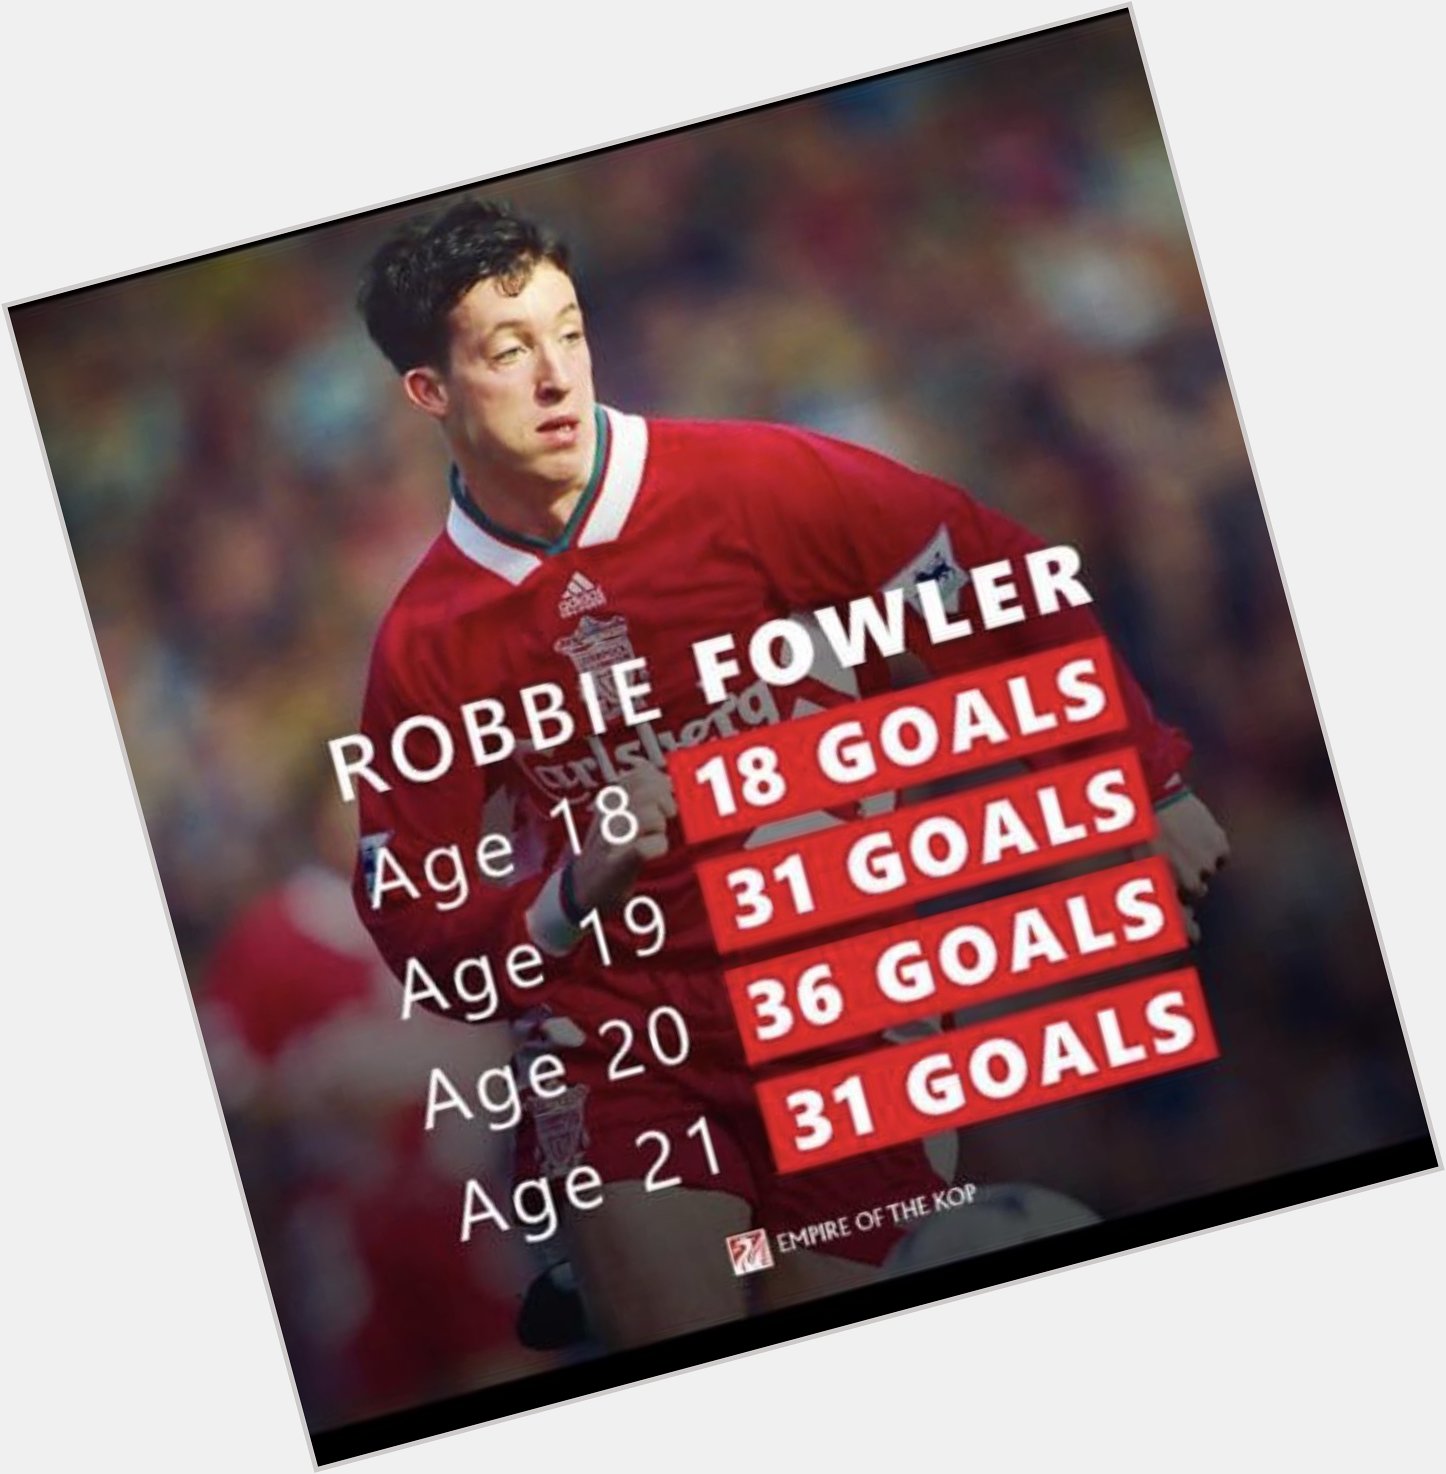 Happy birthday to the legend Robbie Fowler, god       